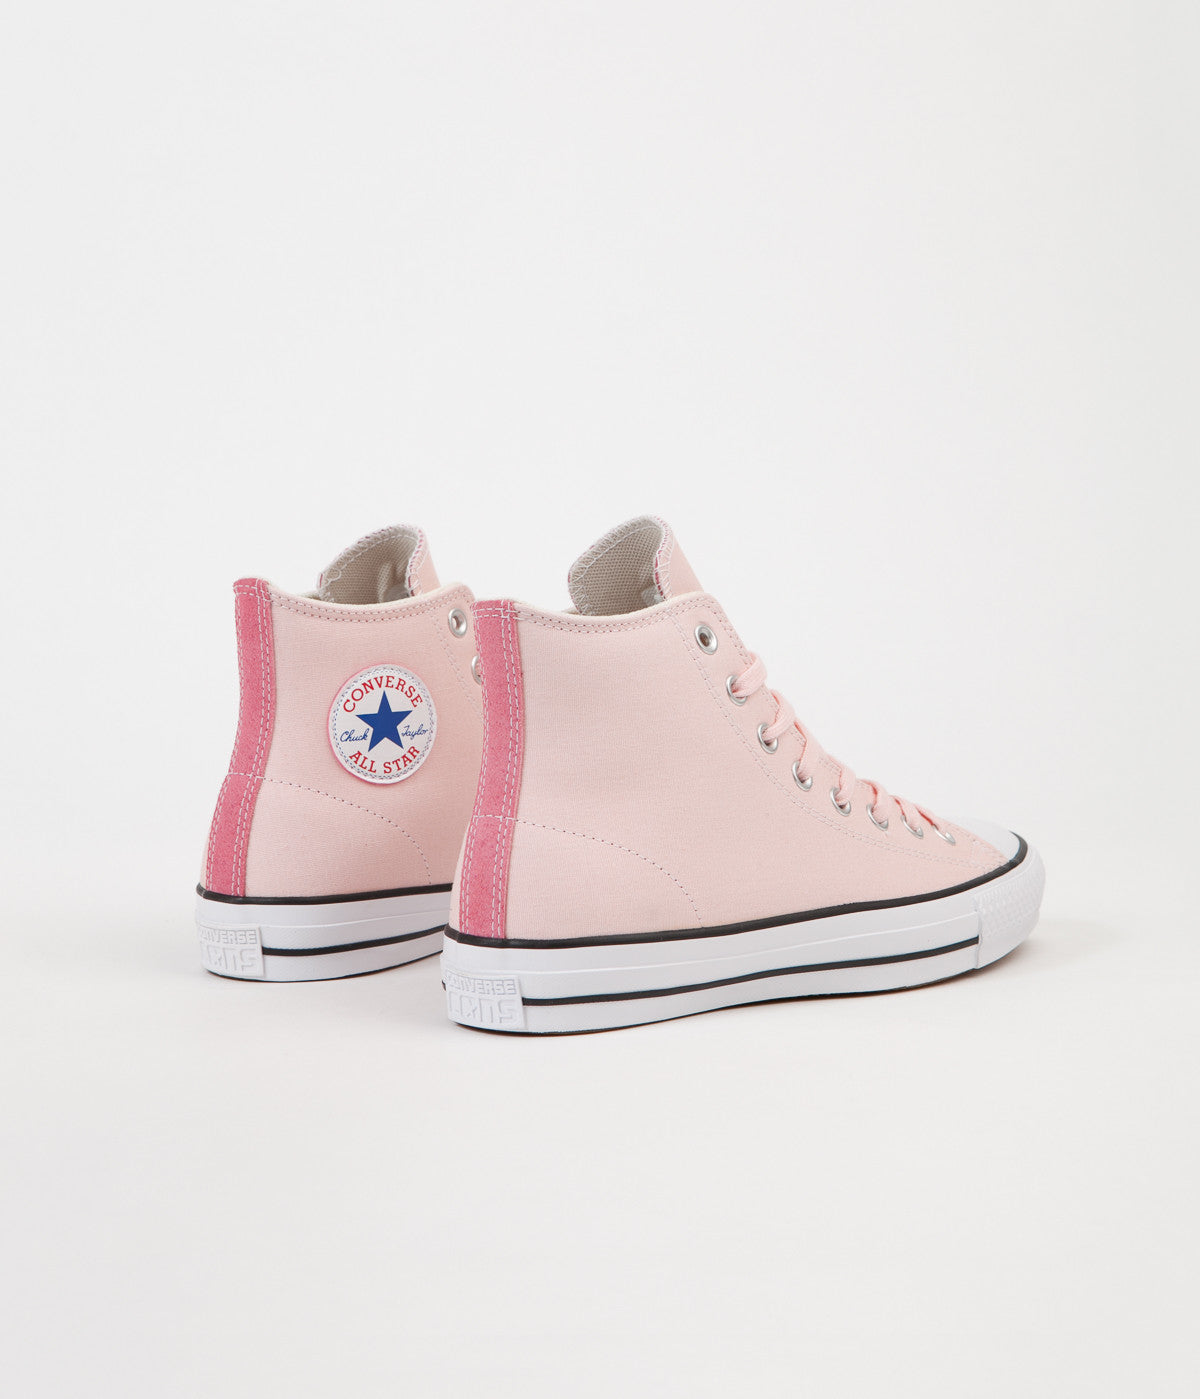 Converse CTAS Pro Hi Shoes - Vapor Pink / Pink Glow / Natural | Flatspot